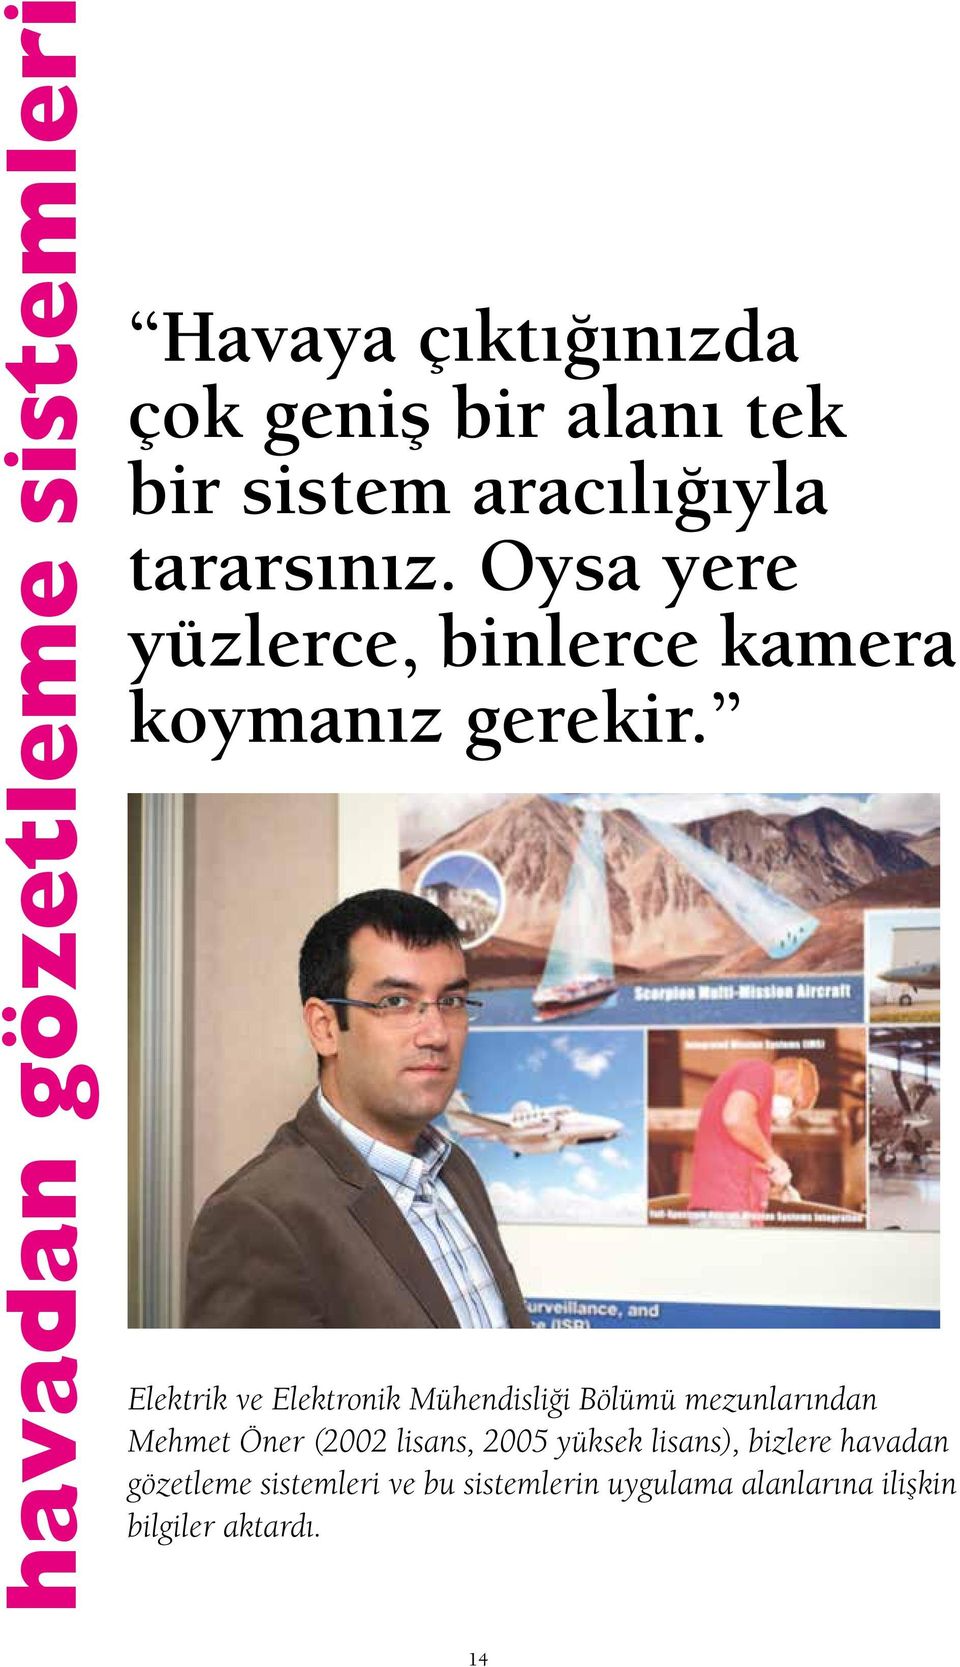 Elektrik ve Elektronik Mühendisliği Bölümü mezunlarından Mehmet Öner (2002 lisans, 2005